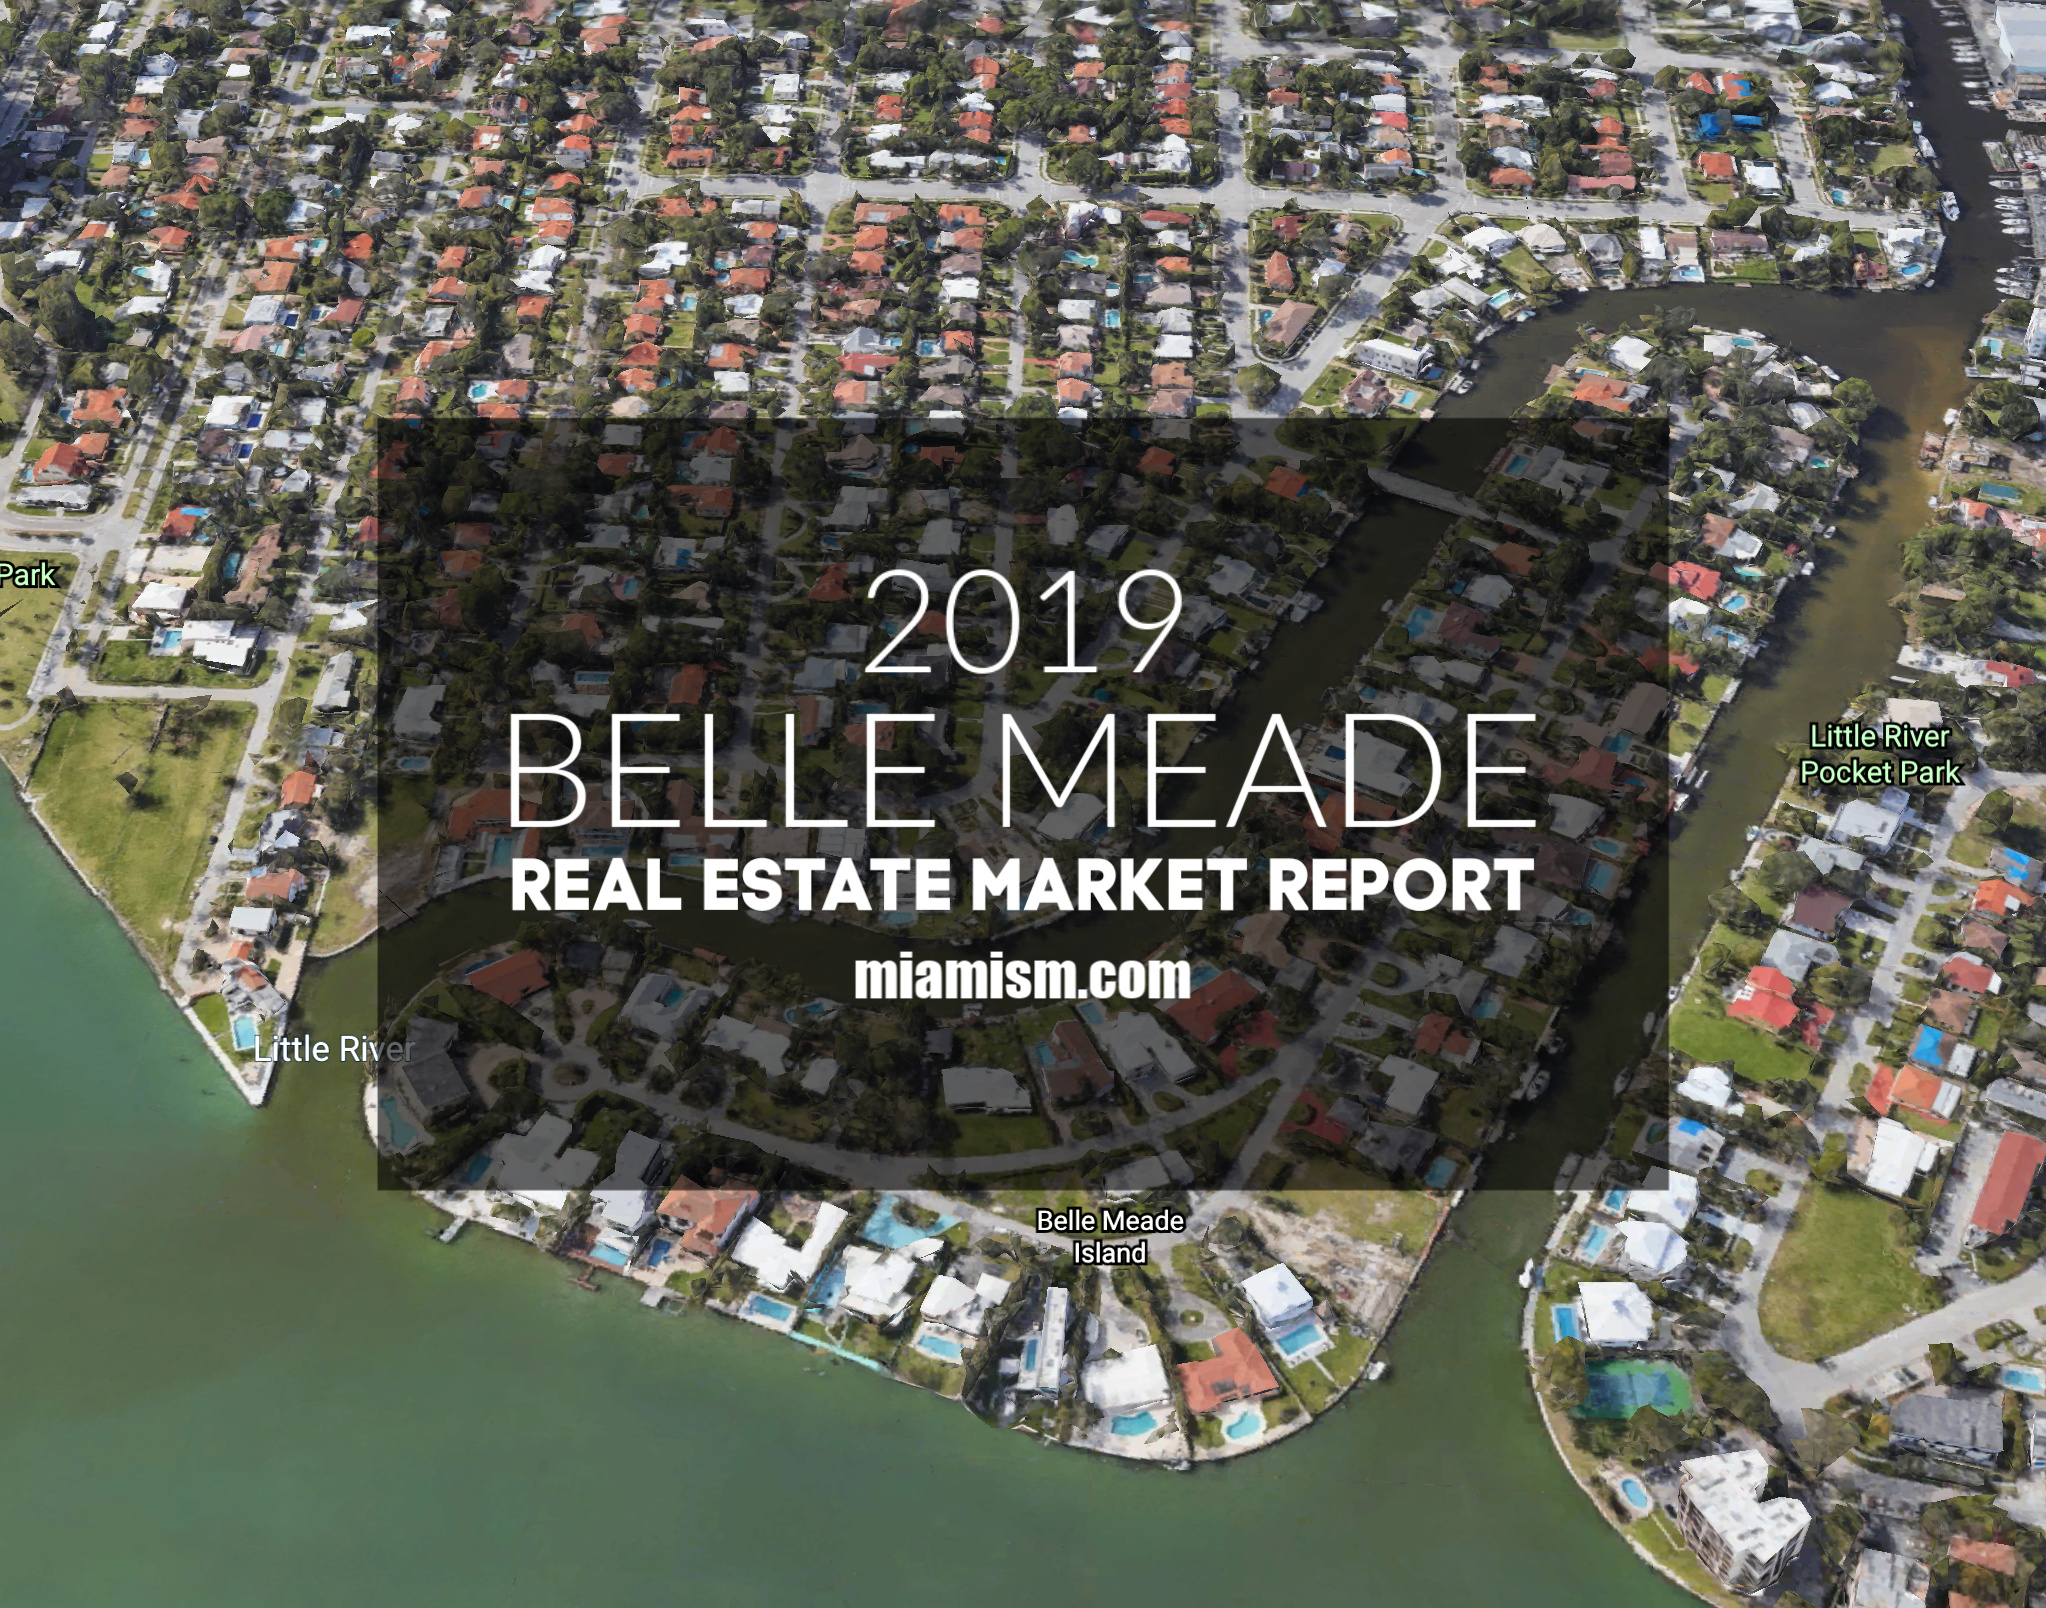 belle-meade-real-estate-market-report-2019